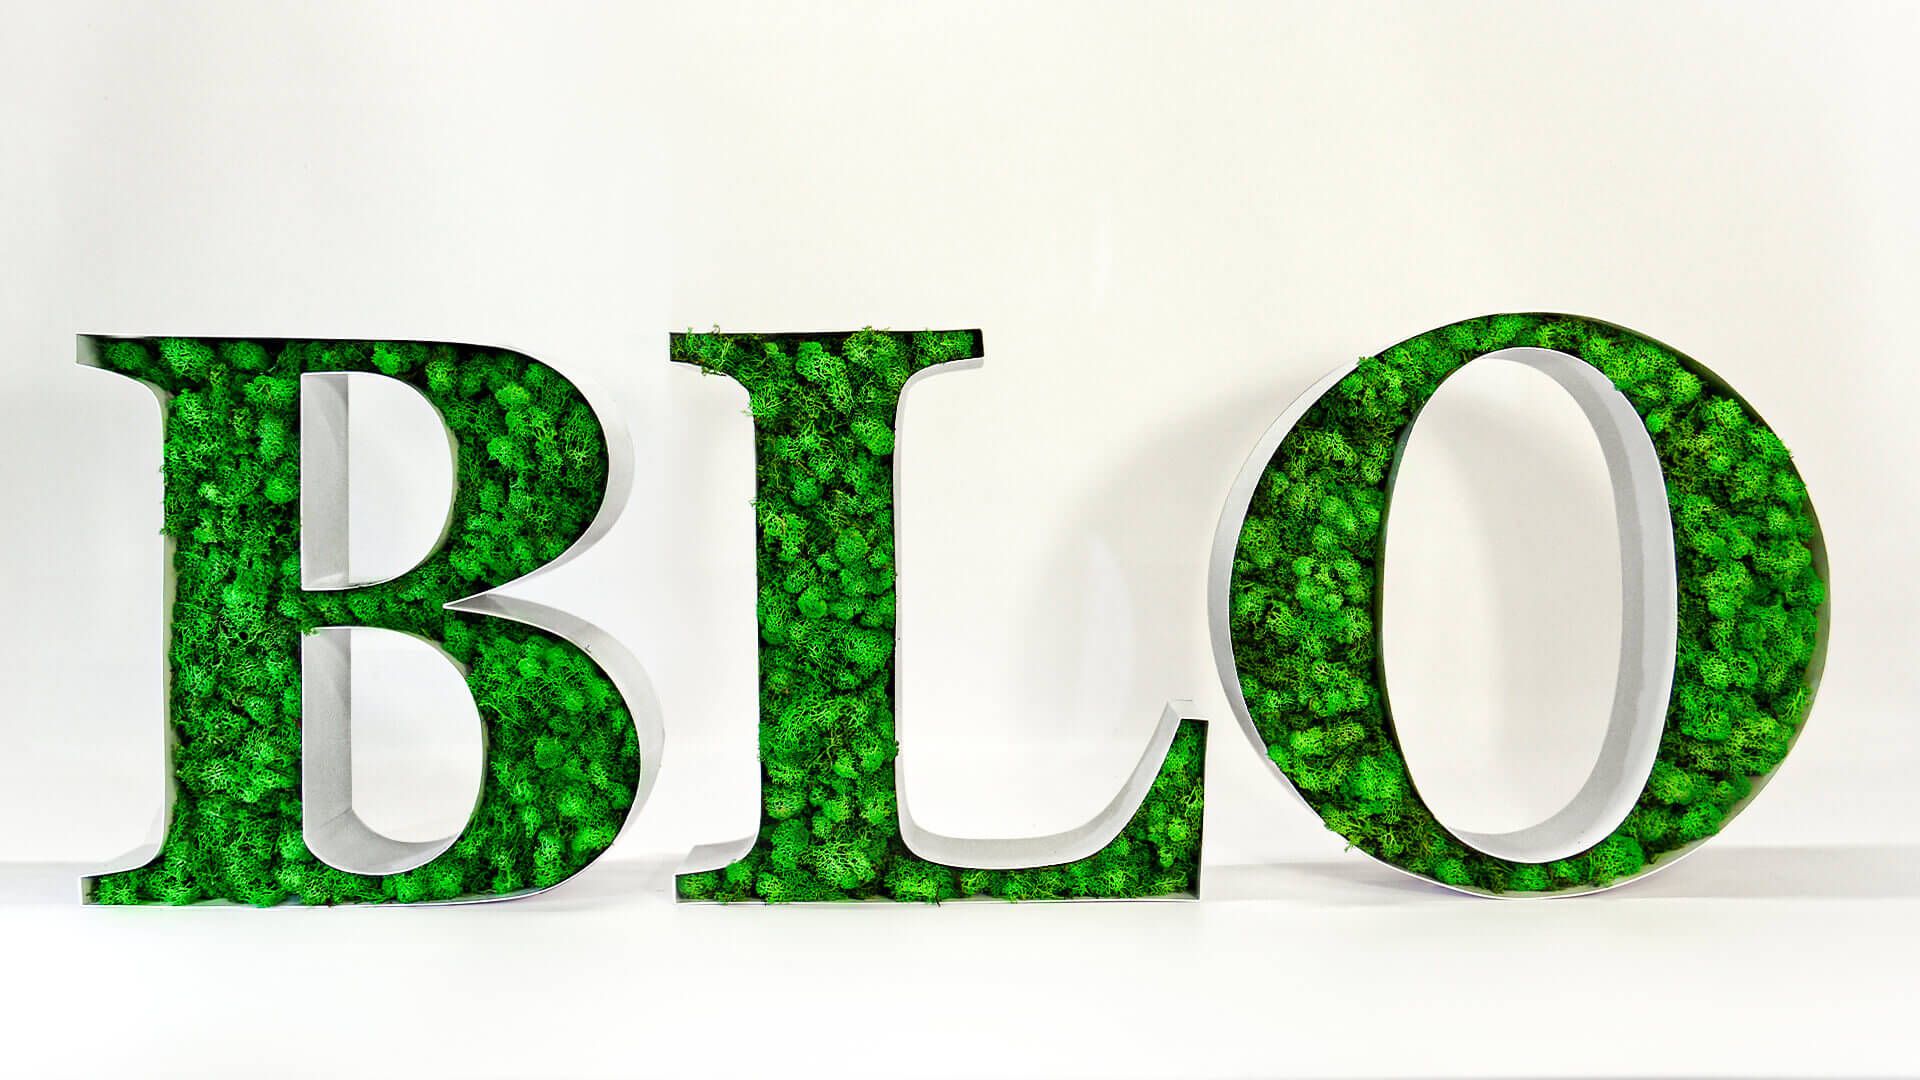 BLO lettere decorative - Lettere decorative BLO, piene di muschio.